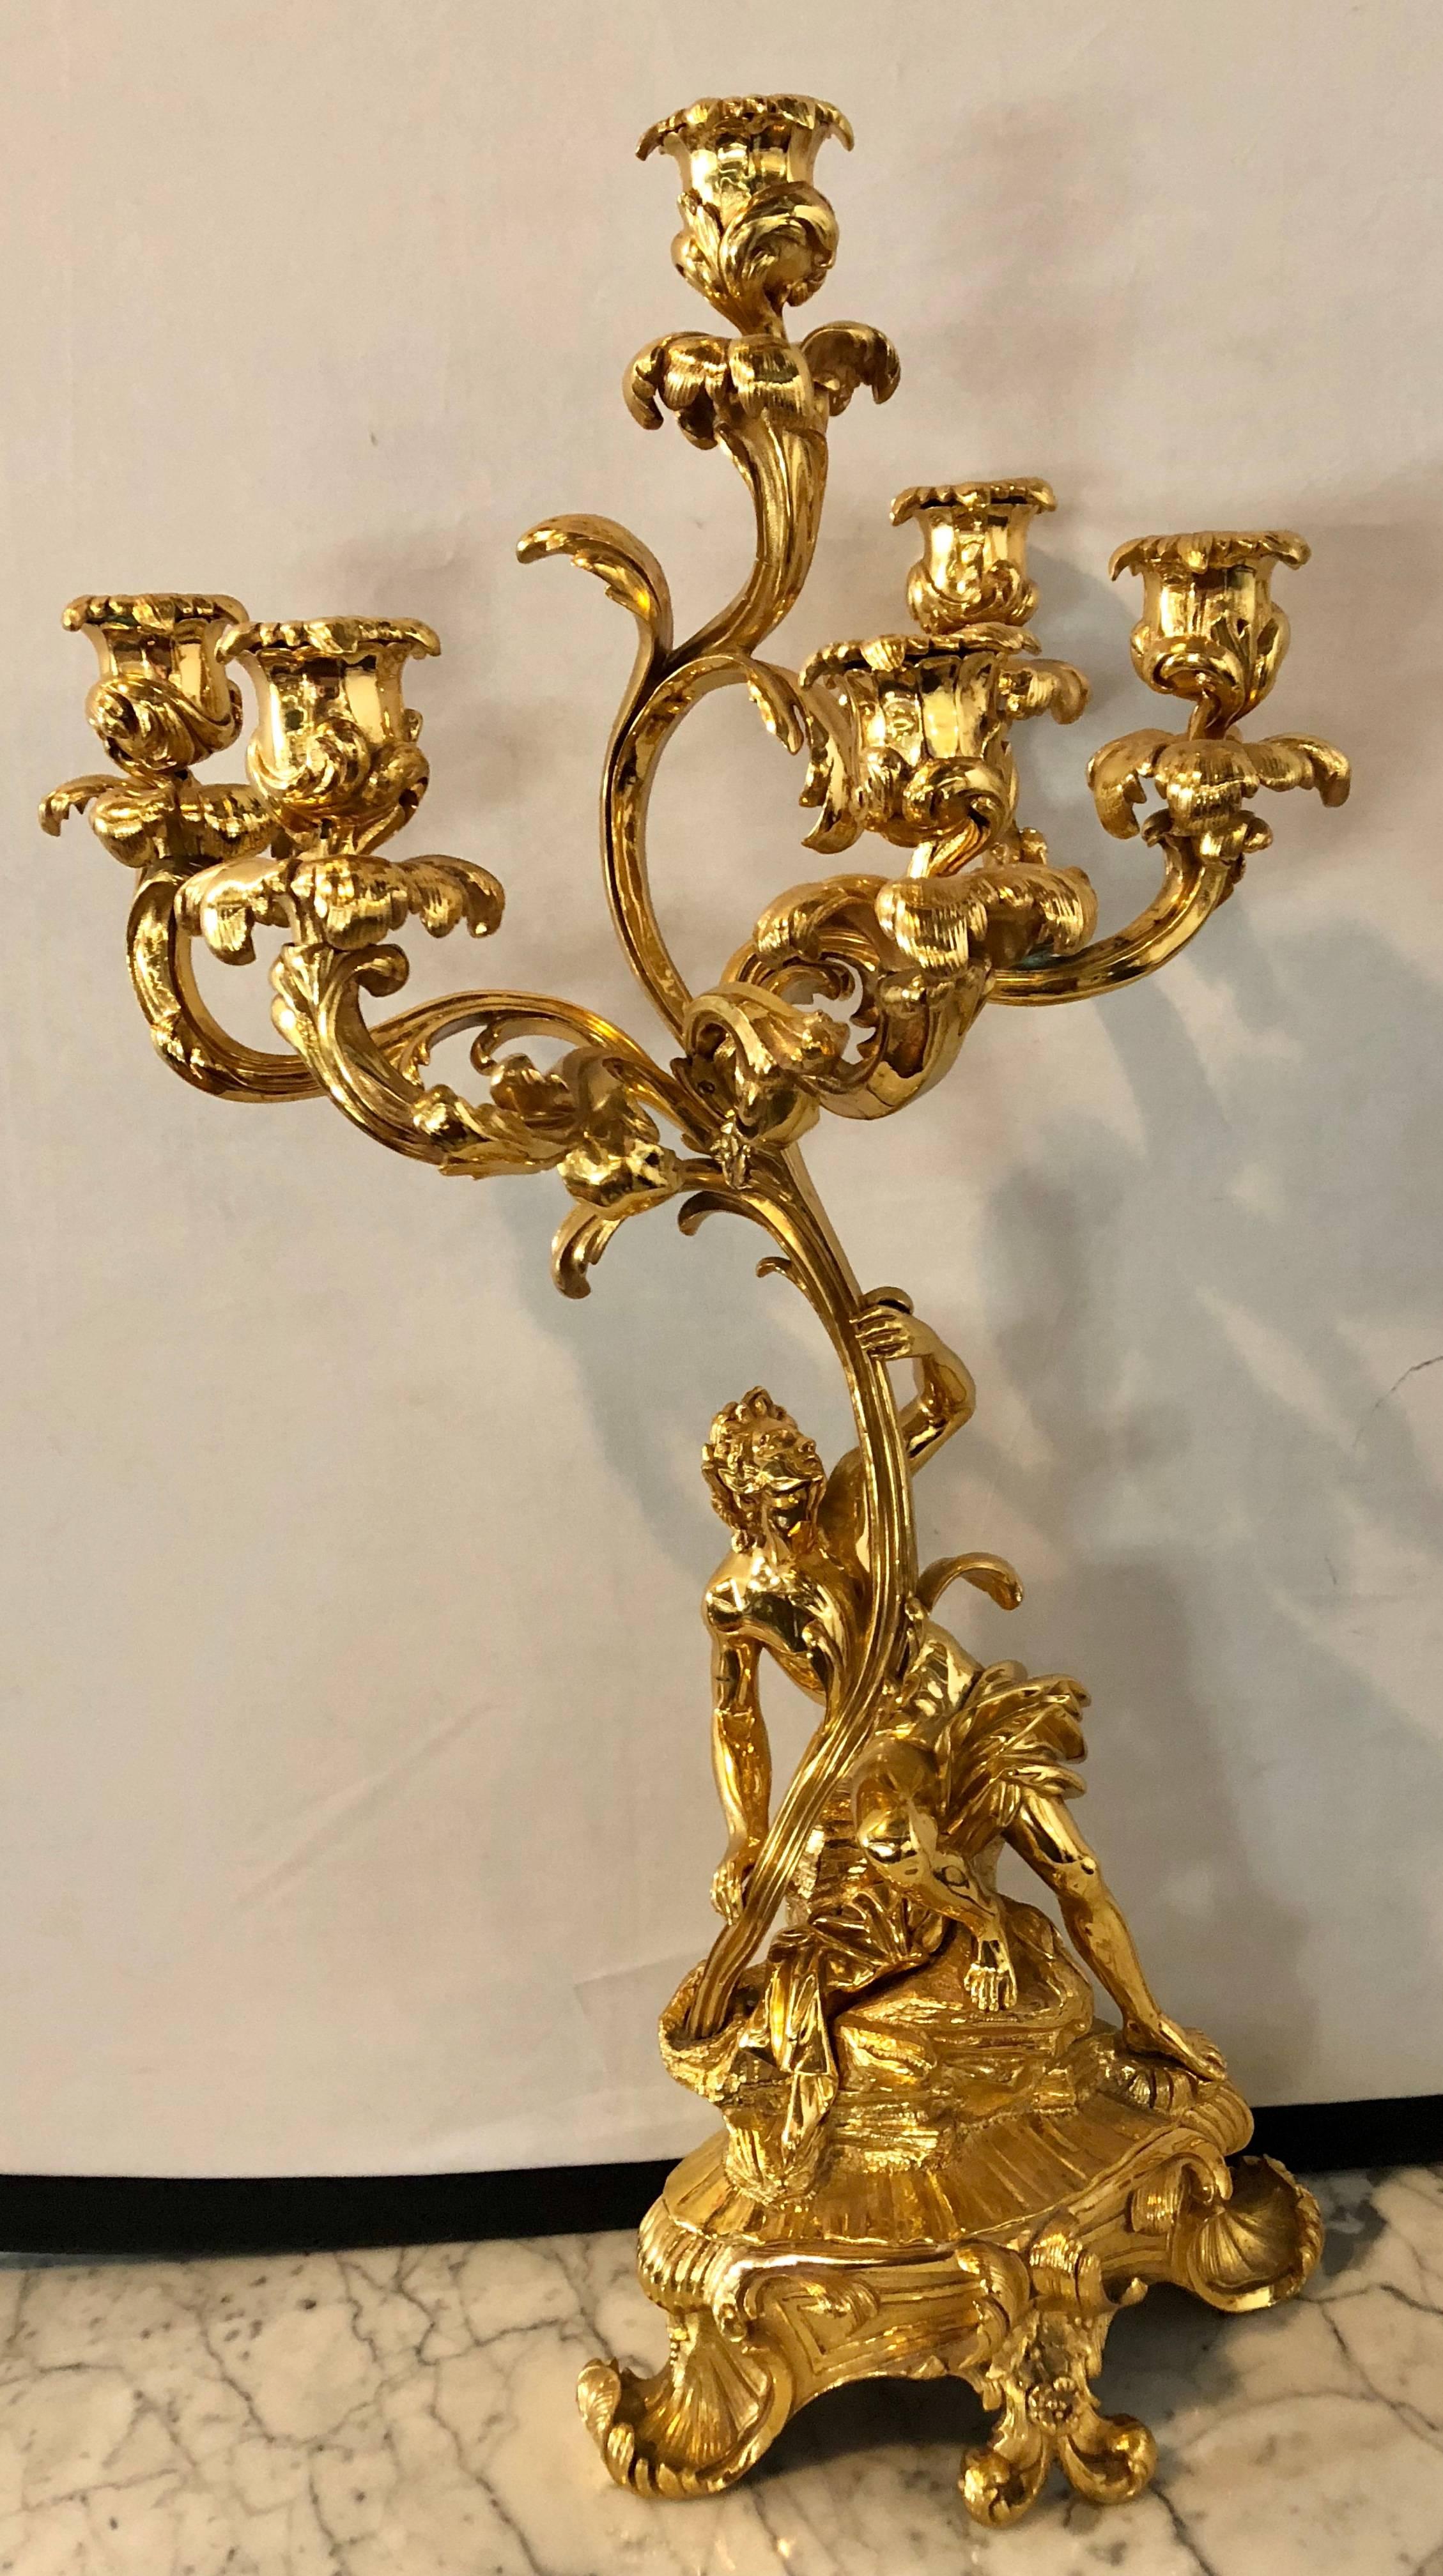 Paire d'étonnants candélabres figuratifs à six bras de style Louis XVI du 19e siècle, en bronze plaqué or 24 carats. Chacune d'entre elles possède cinq bras formant un grand candélabre soutenu par un homme et le second par une femme, tous deux